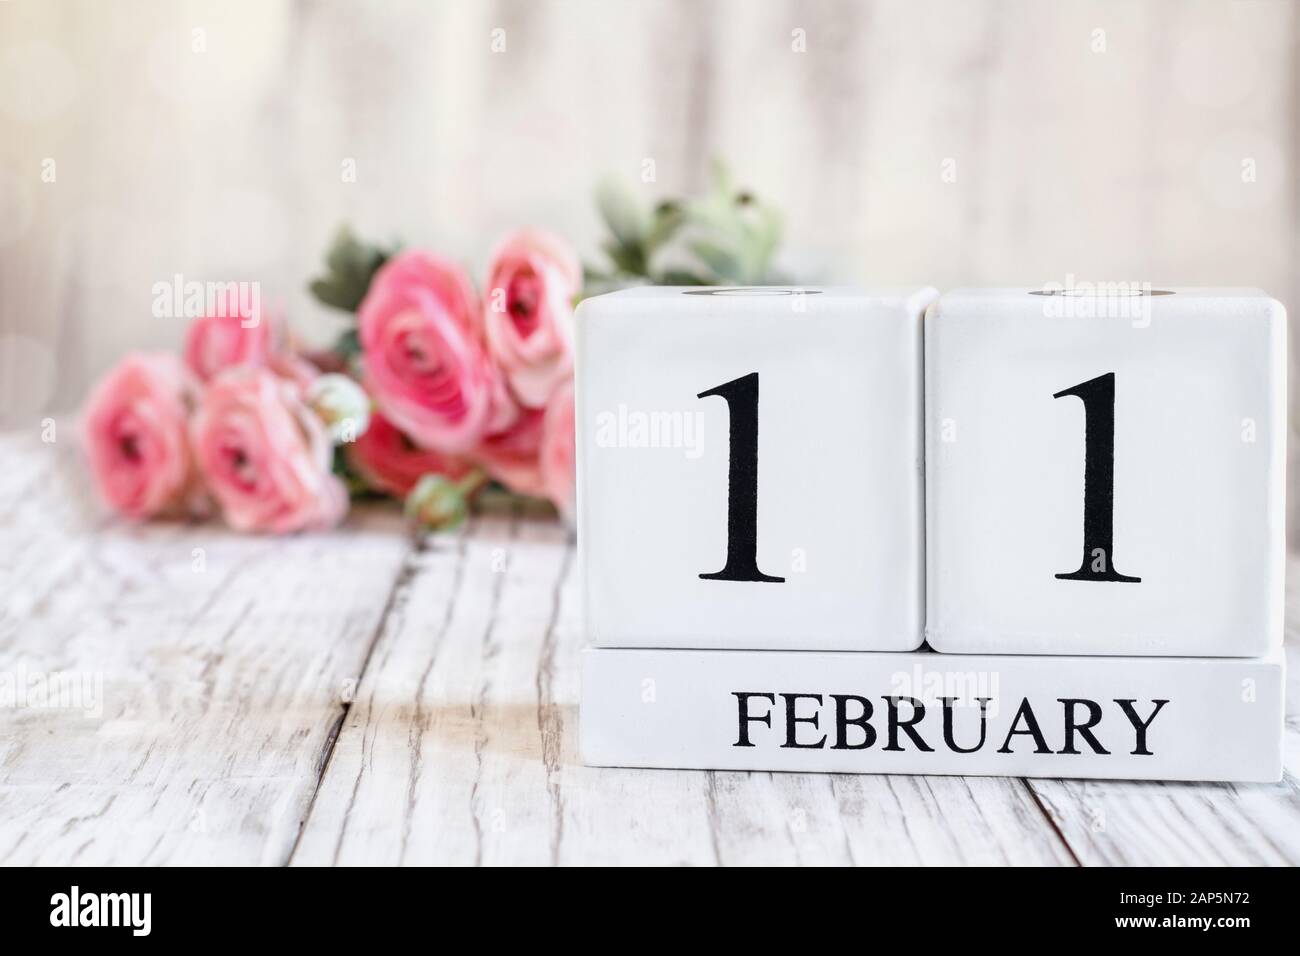 Blocs calendrier en bois blanc avec la date du 11 février. Foyer sélectif avec ranunculus rose en arrière-plan sur une table en bois. Banque D'Images